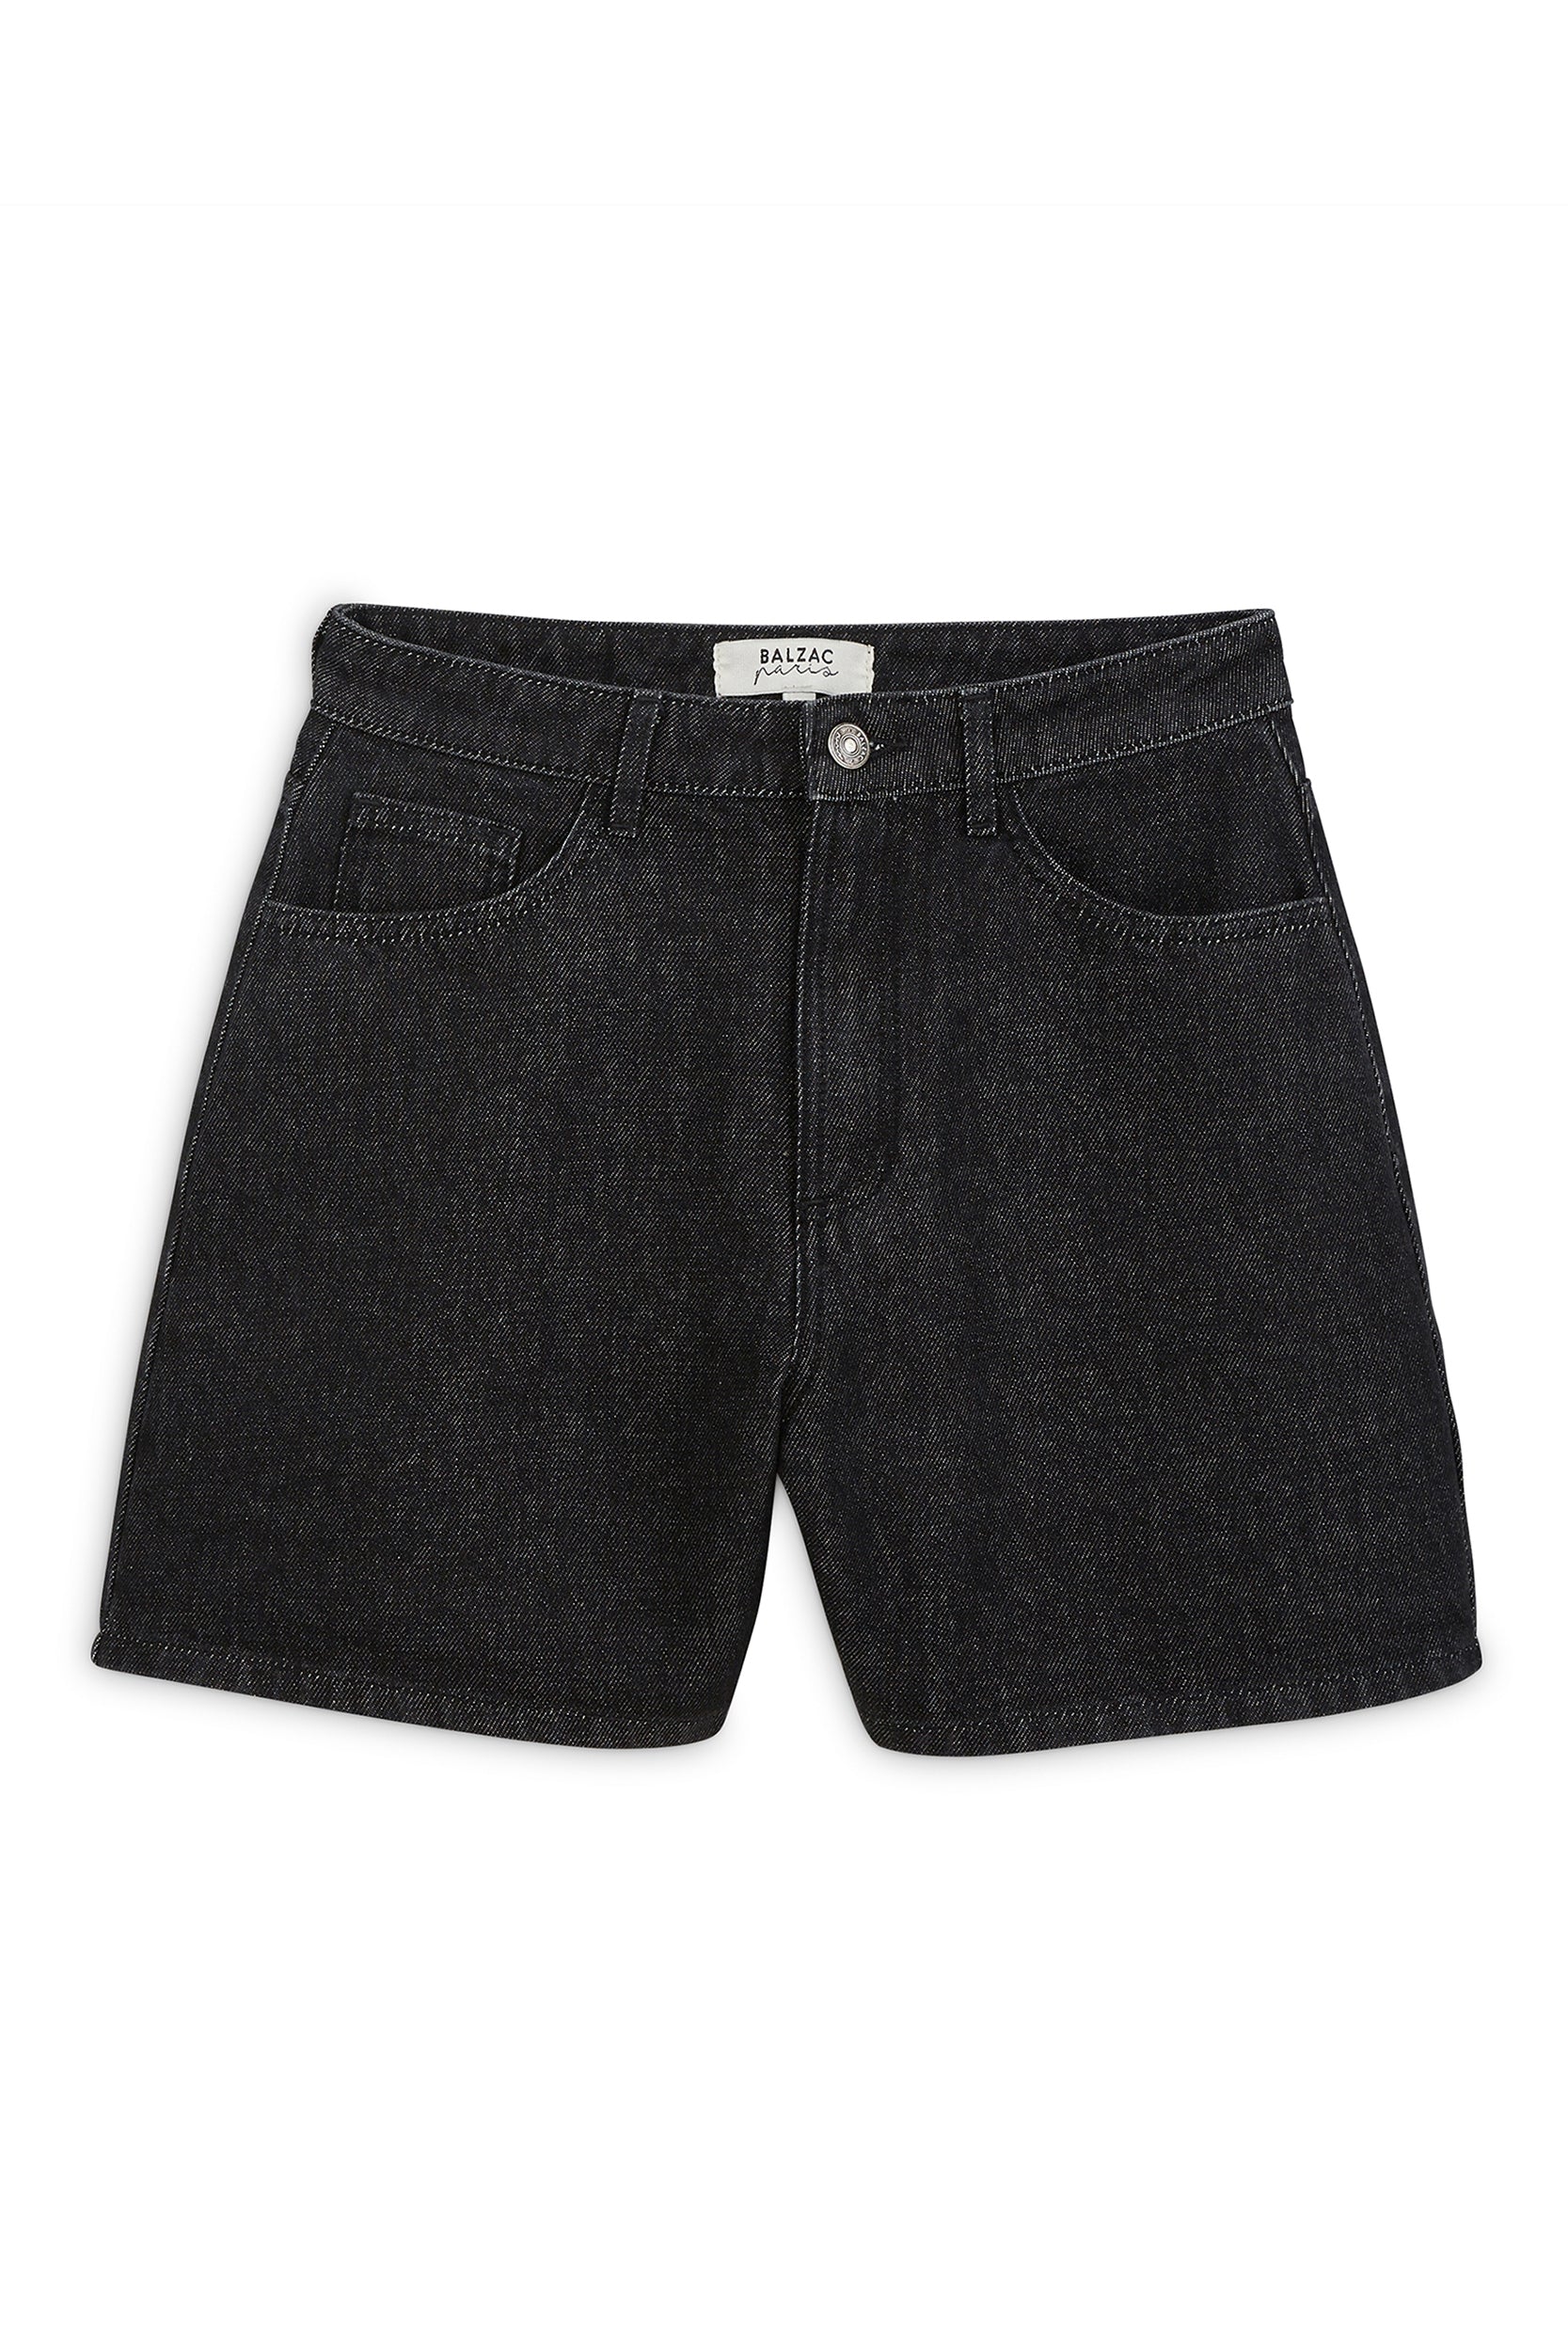 Maylone heather black denim shorts